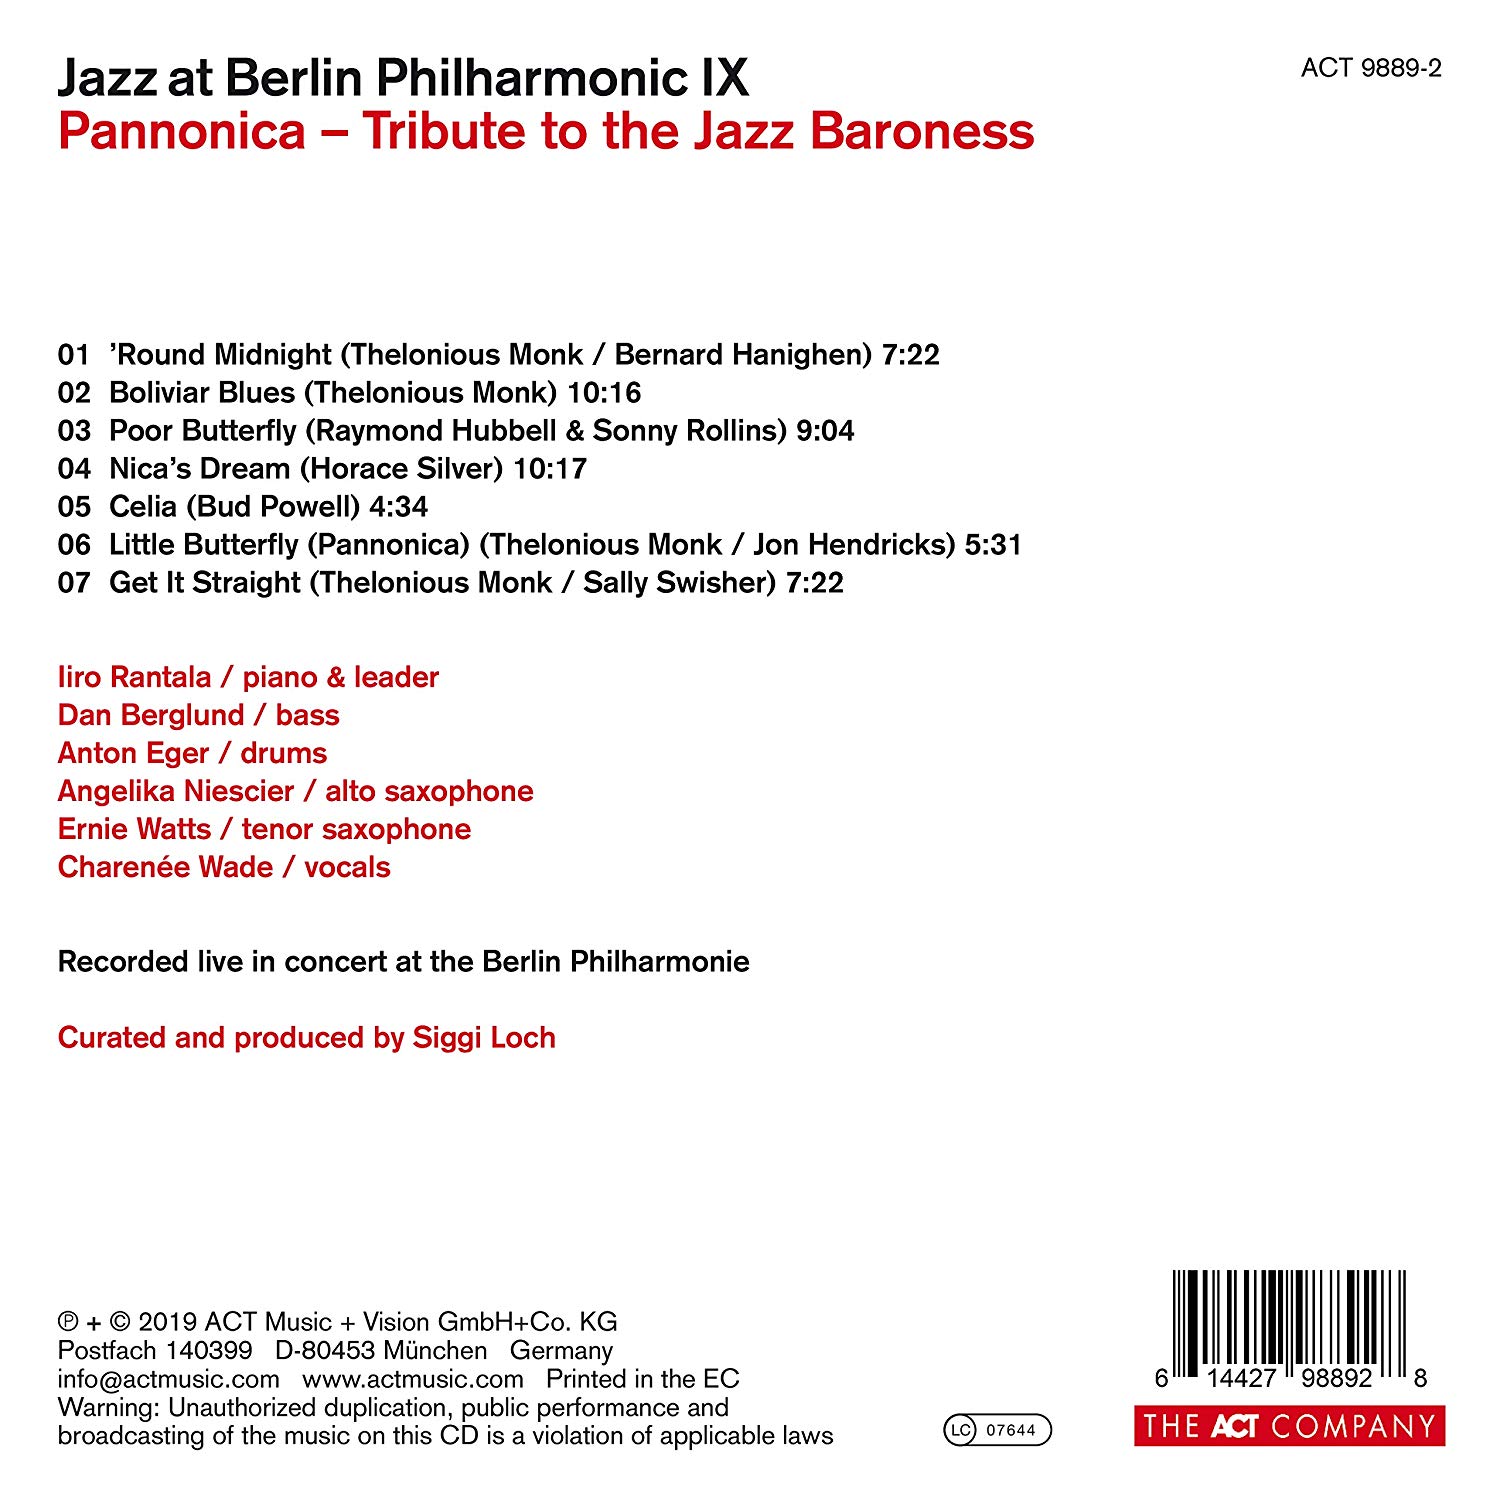 재즈 앳 베를린 필하모닉 9집 - 파노니카 (Jazz at Berlin Philharmonic IX: Pannonica) 